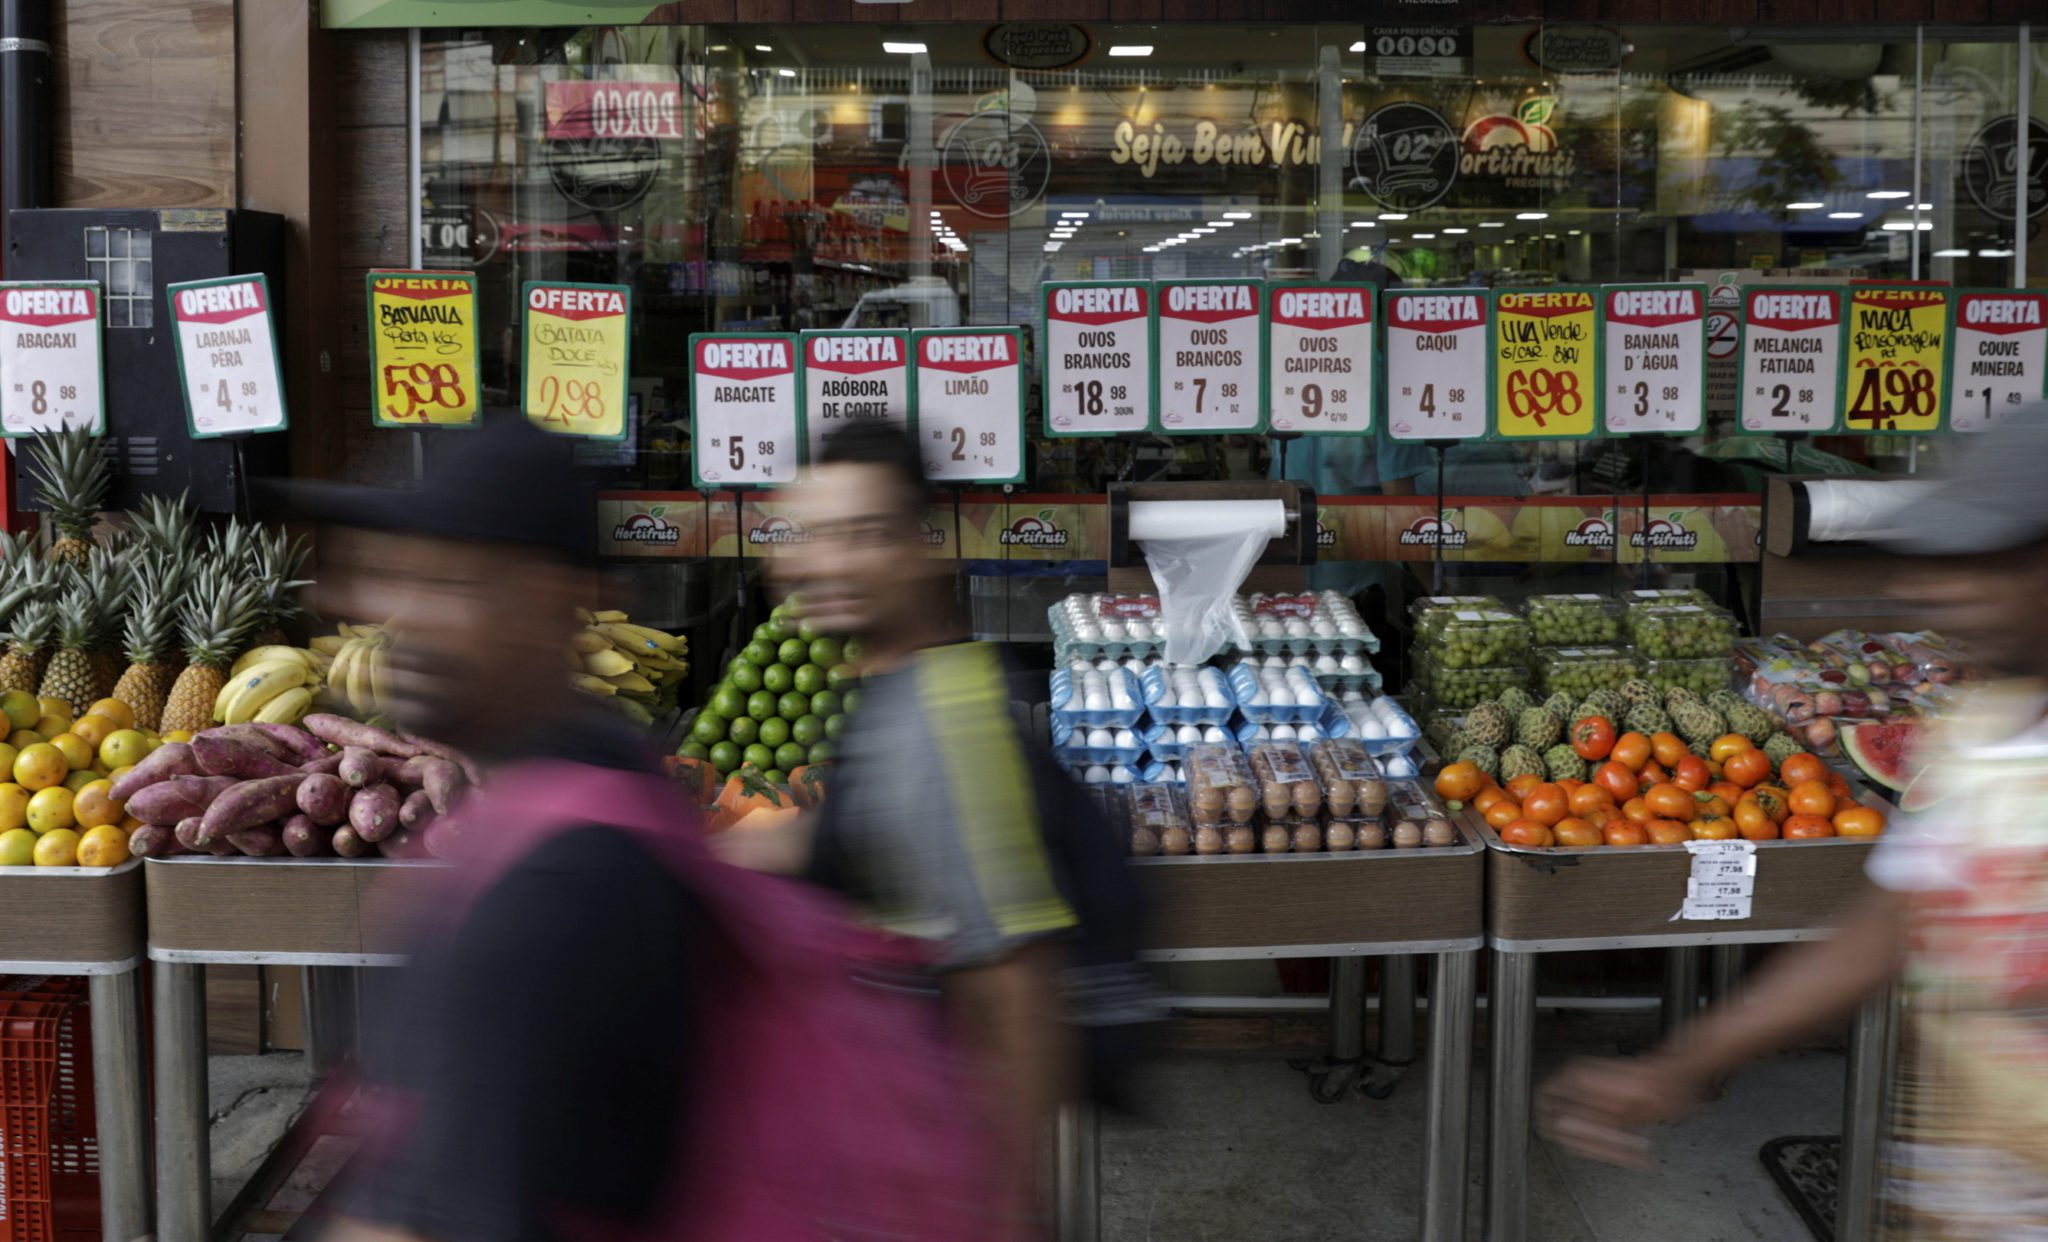 Preços de alimentos exibidos em supermercado no Rio de Janeiro